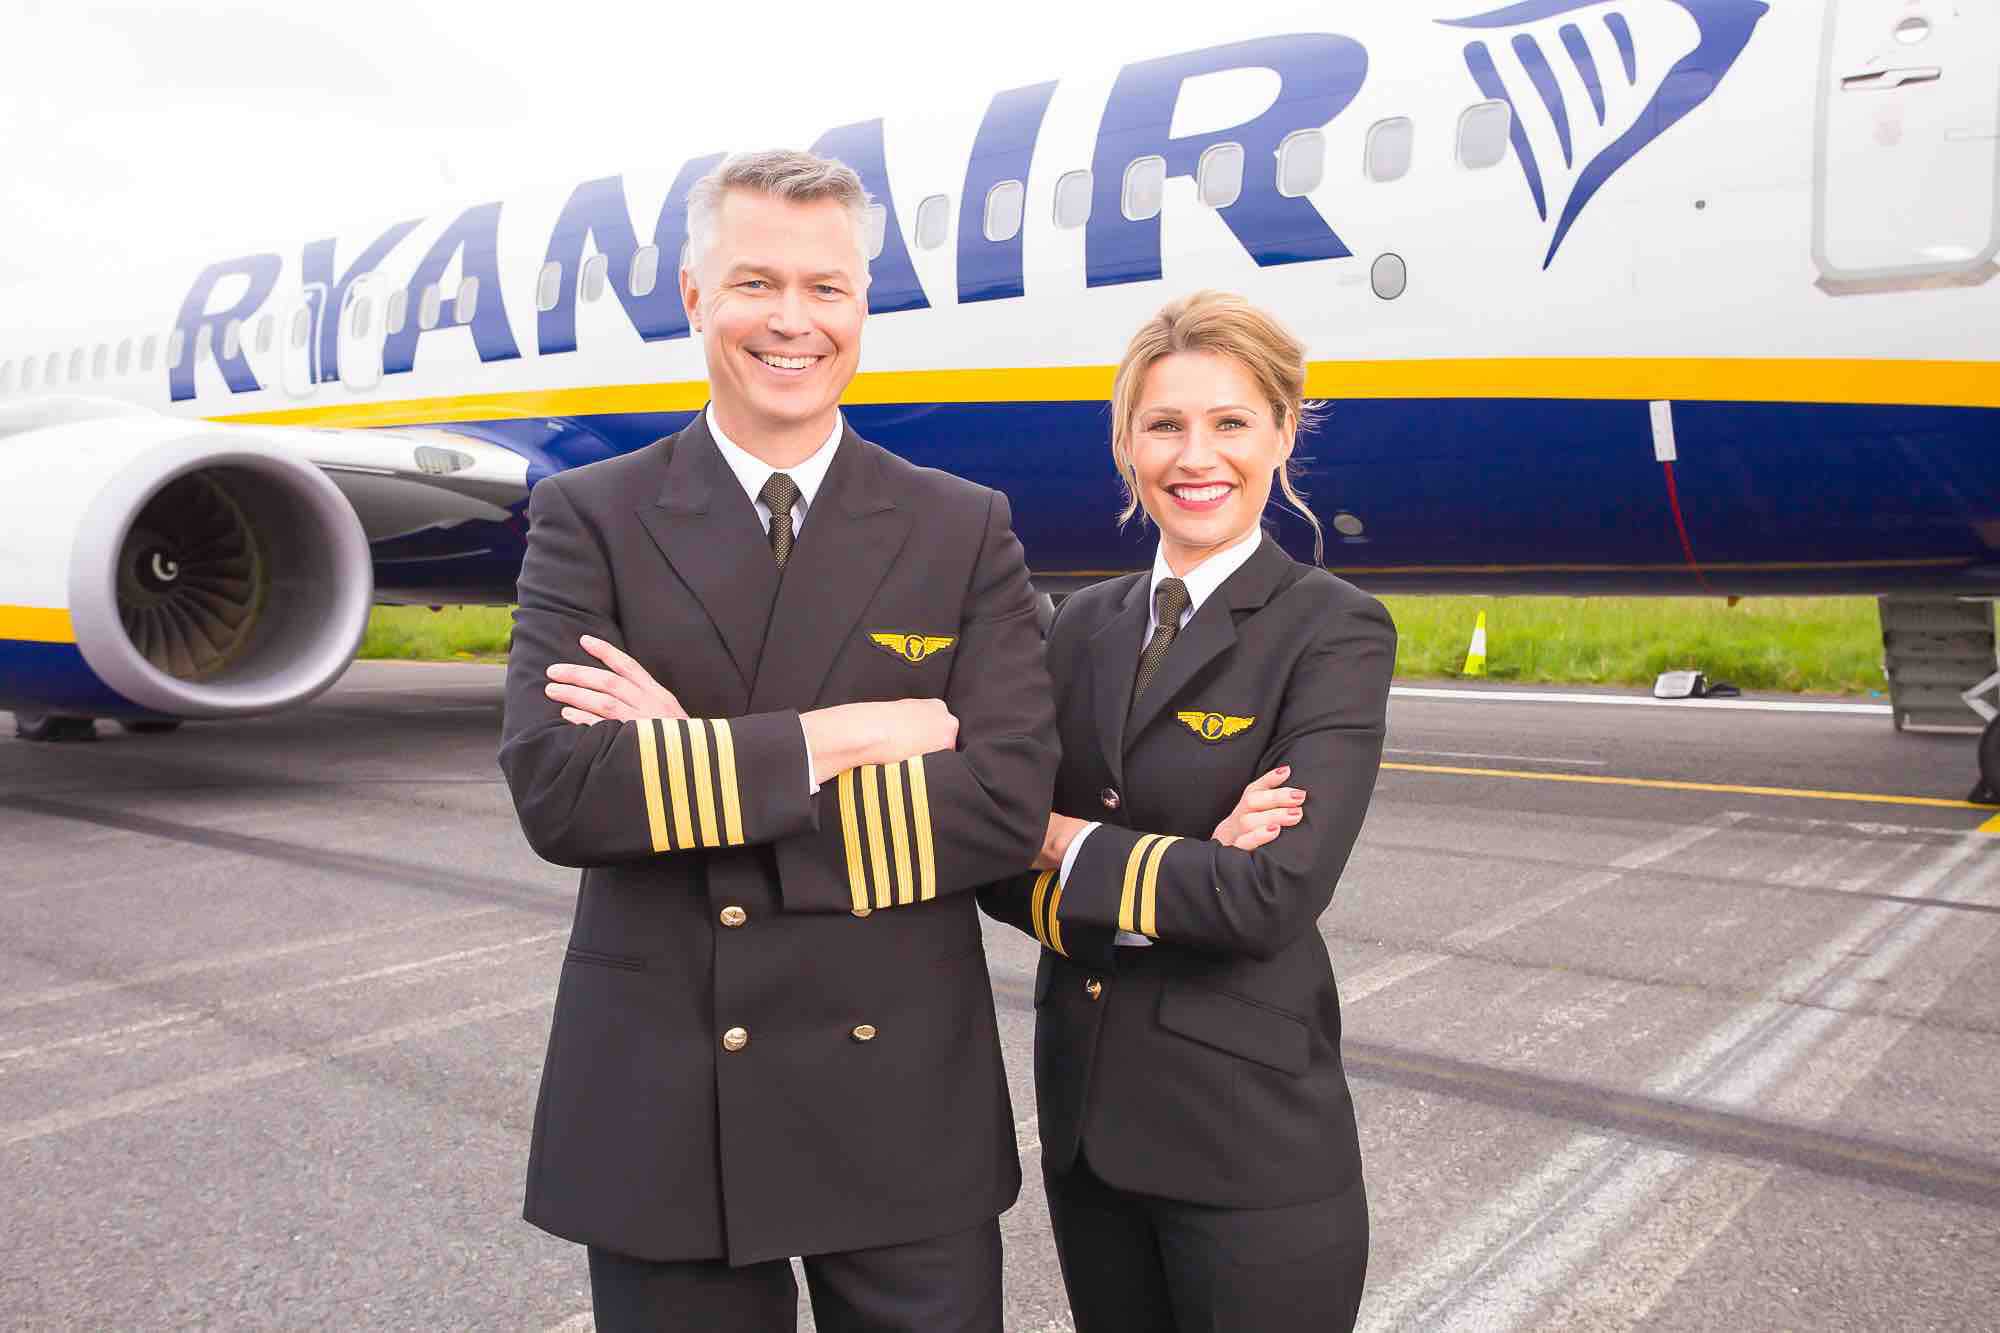 Ryanair pilots